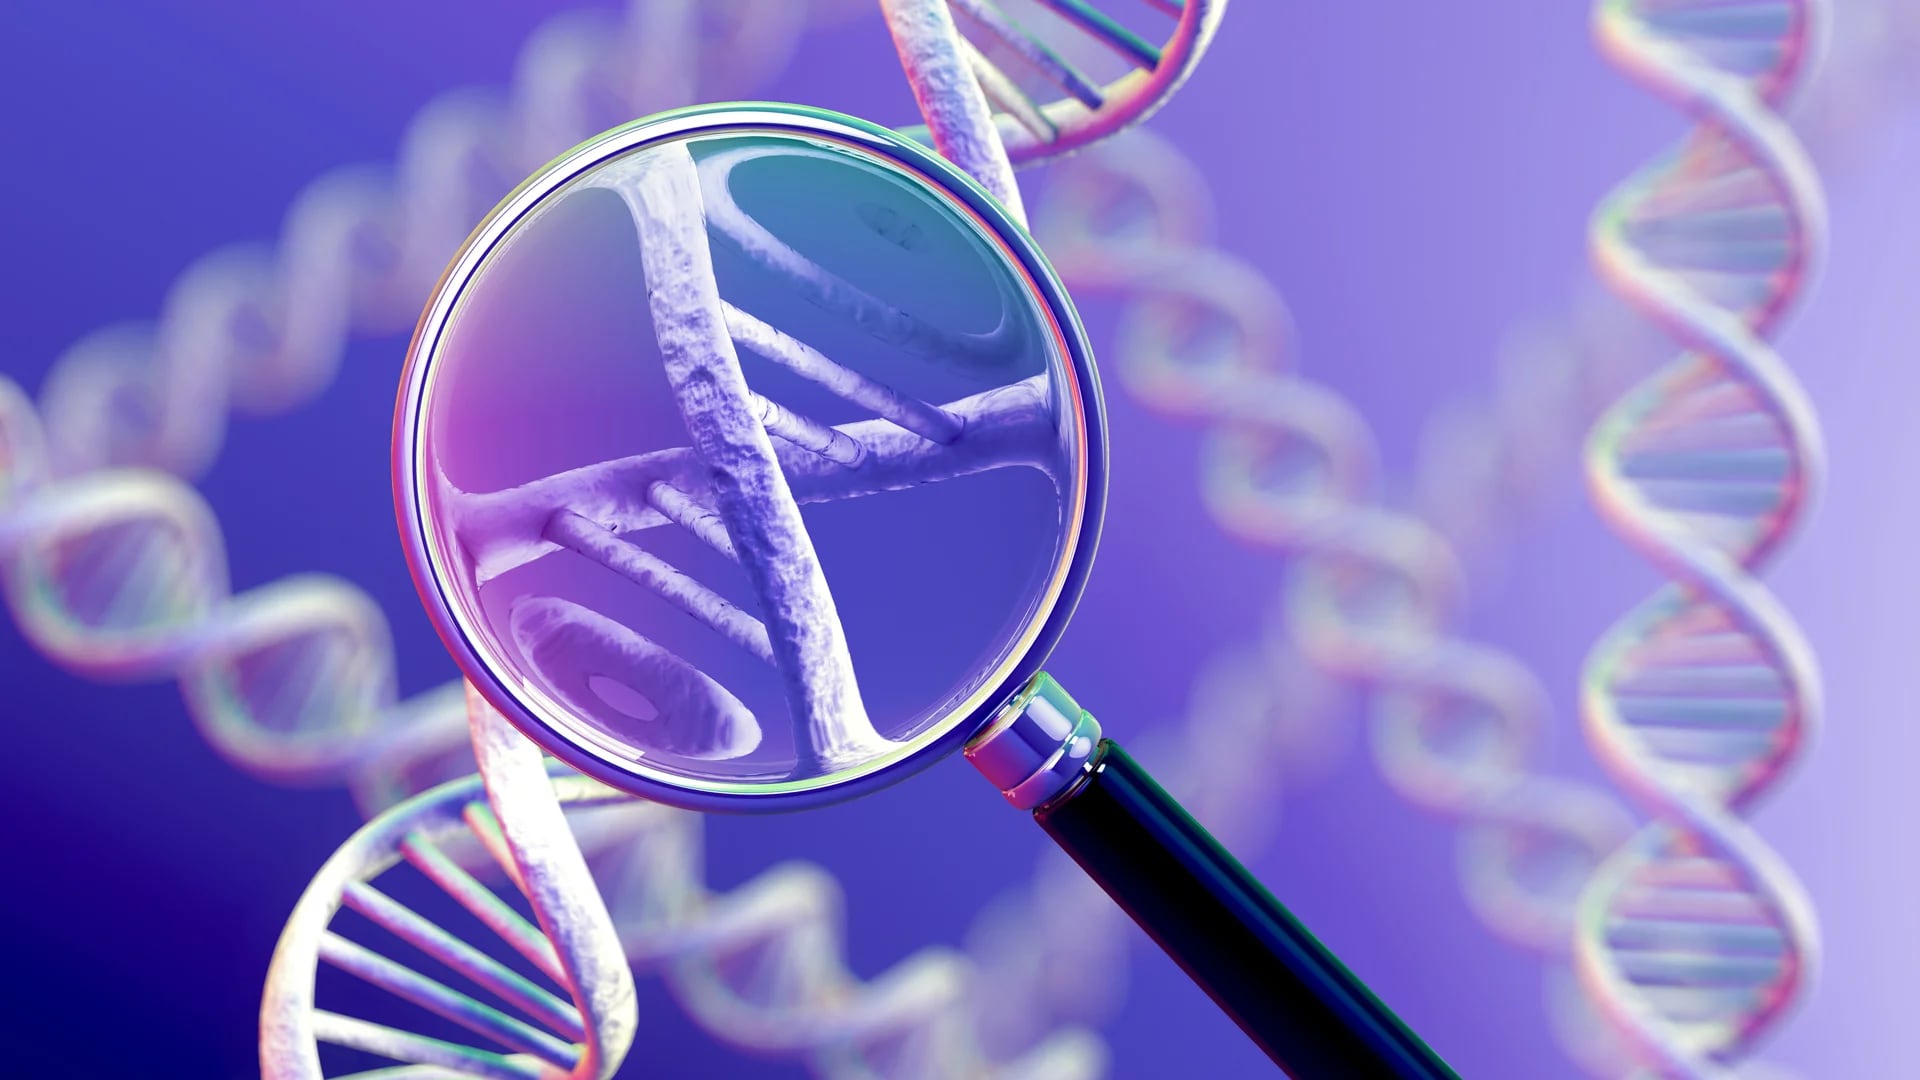 El examen facilita el diagnóstico de la vulnerabilidad hacia determinadas enfermedades hereditarias basándose en la genética (iStock)